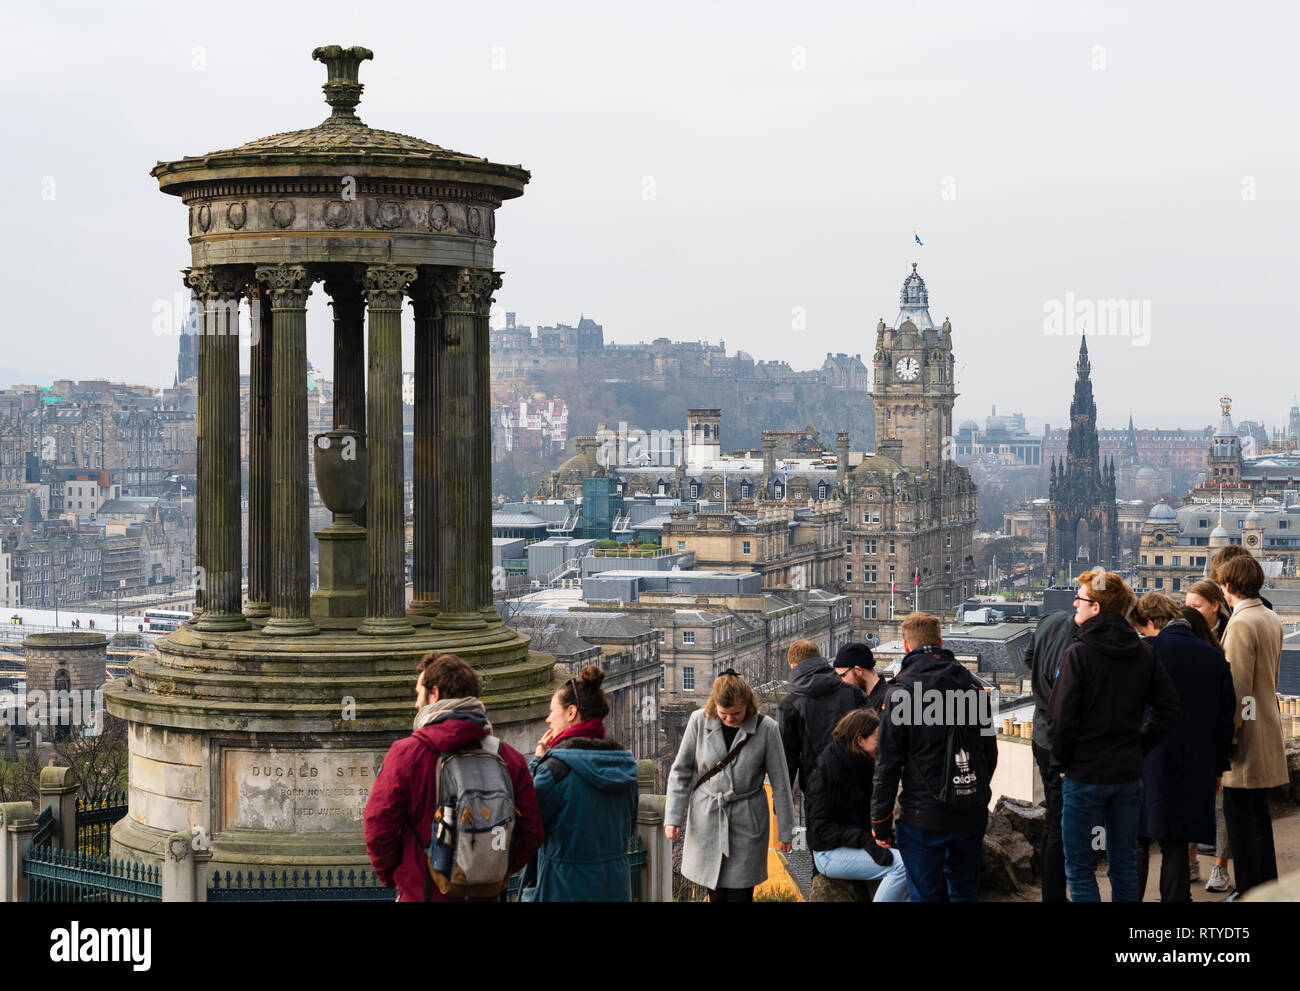 Les touristes profitant de la vue à partir de la ville d'Edimbourg Calton Hill viewpoint, Ecosse, Royaume-Uni Banque D'Images